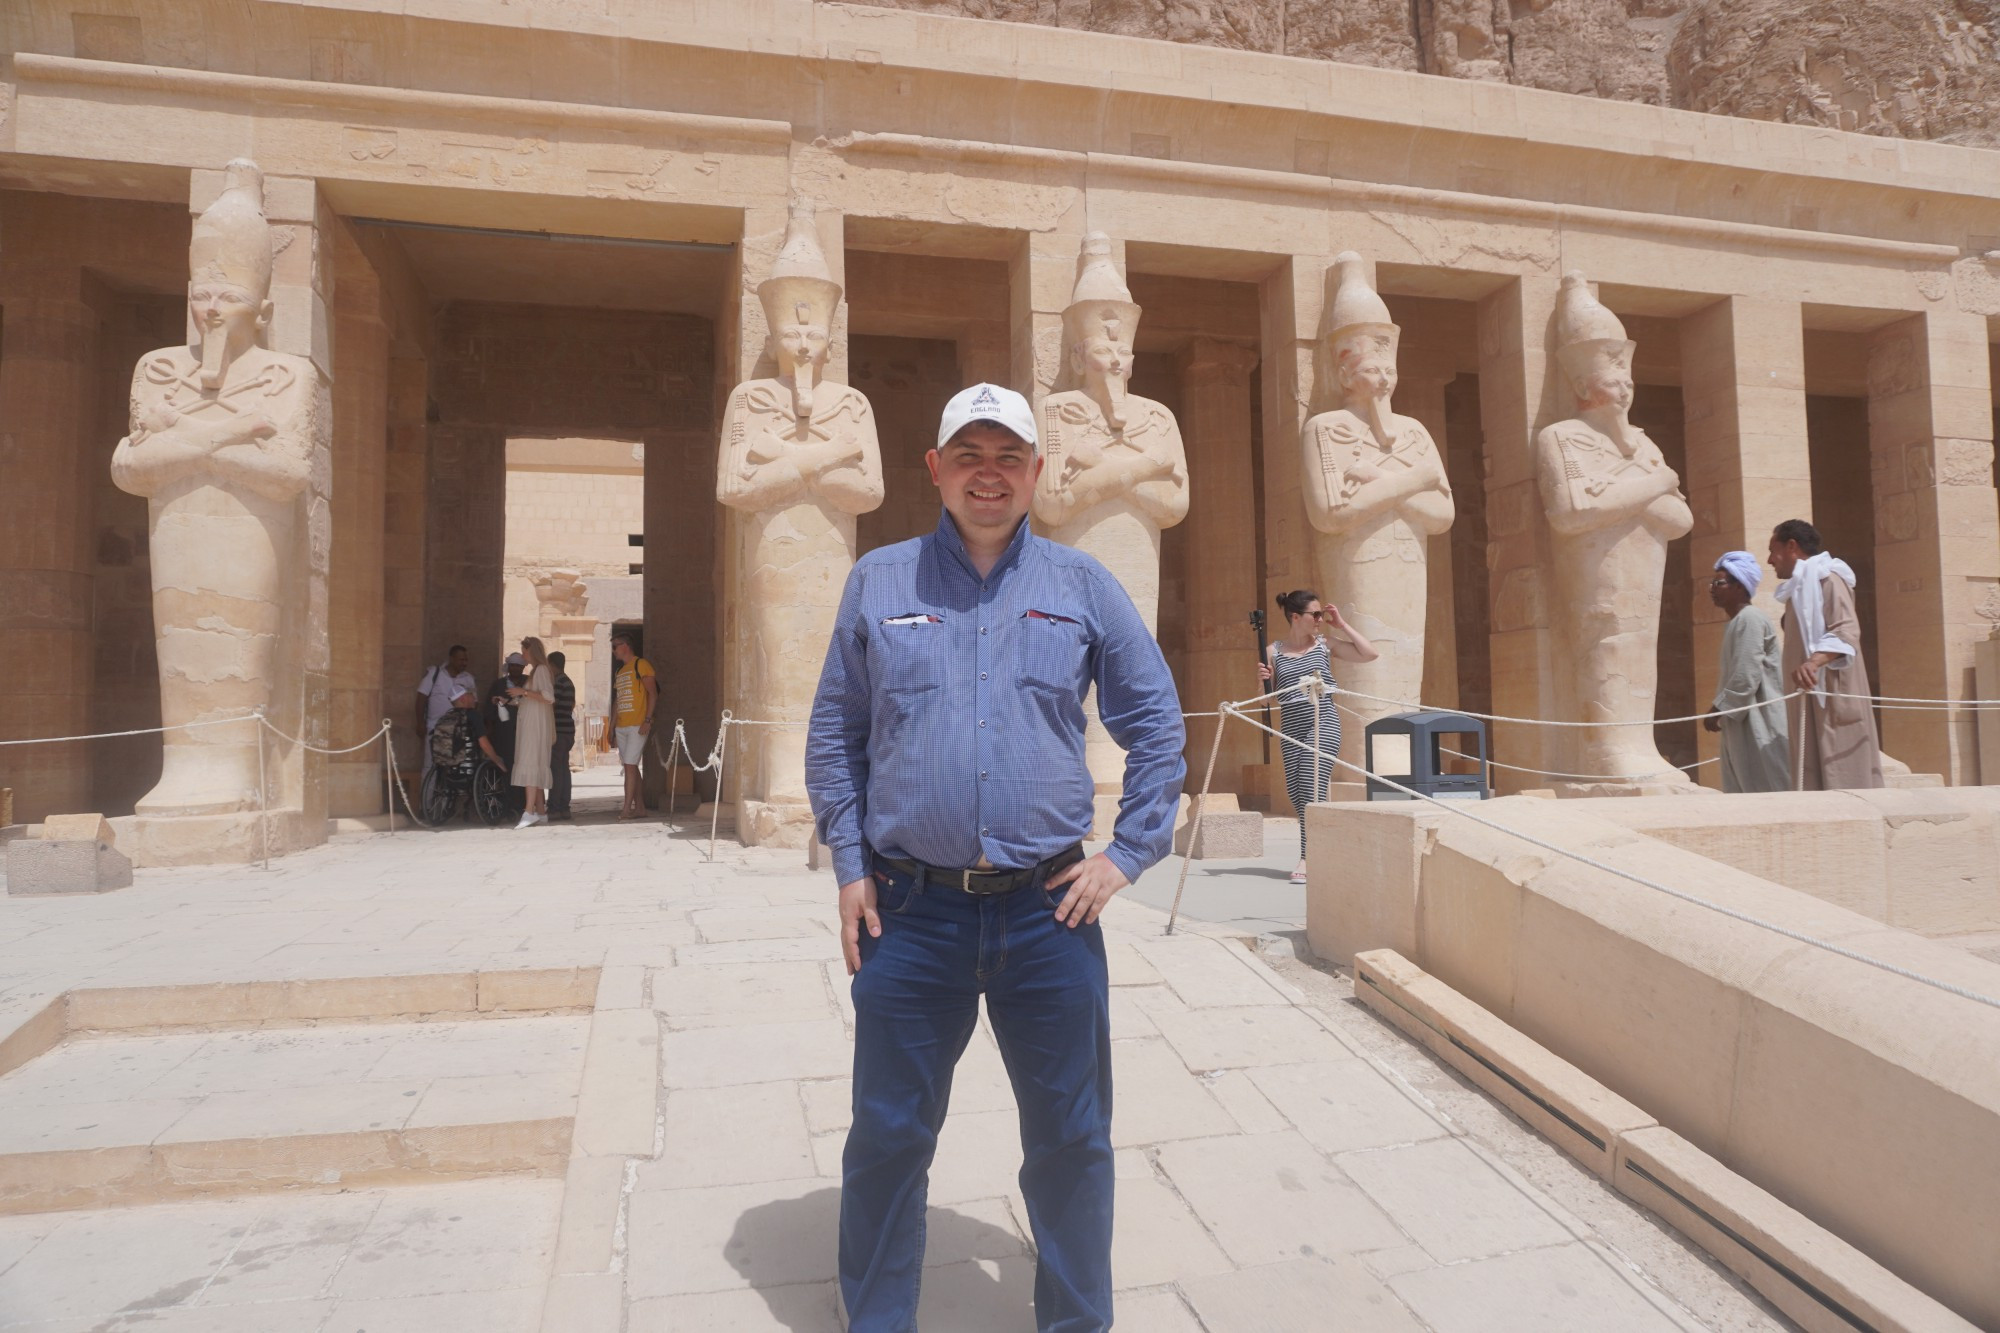 Luxor, Egypt